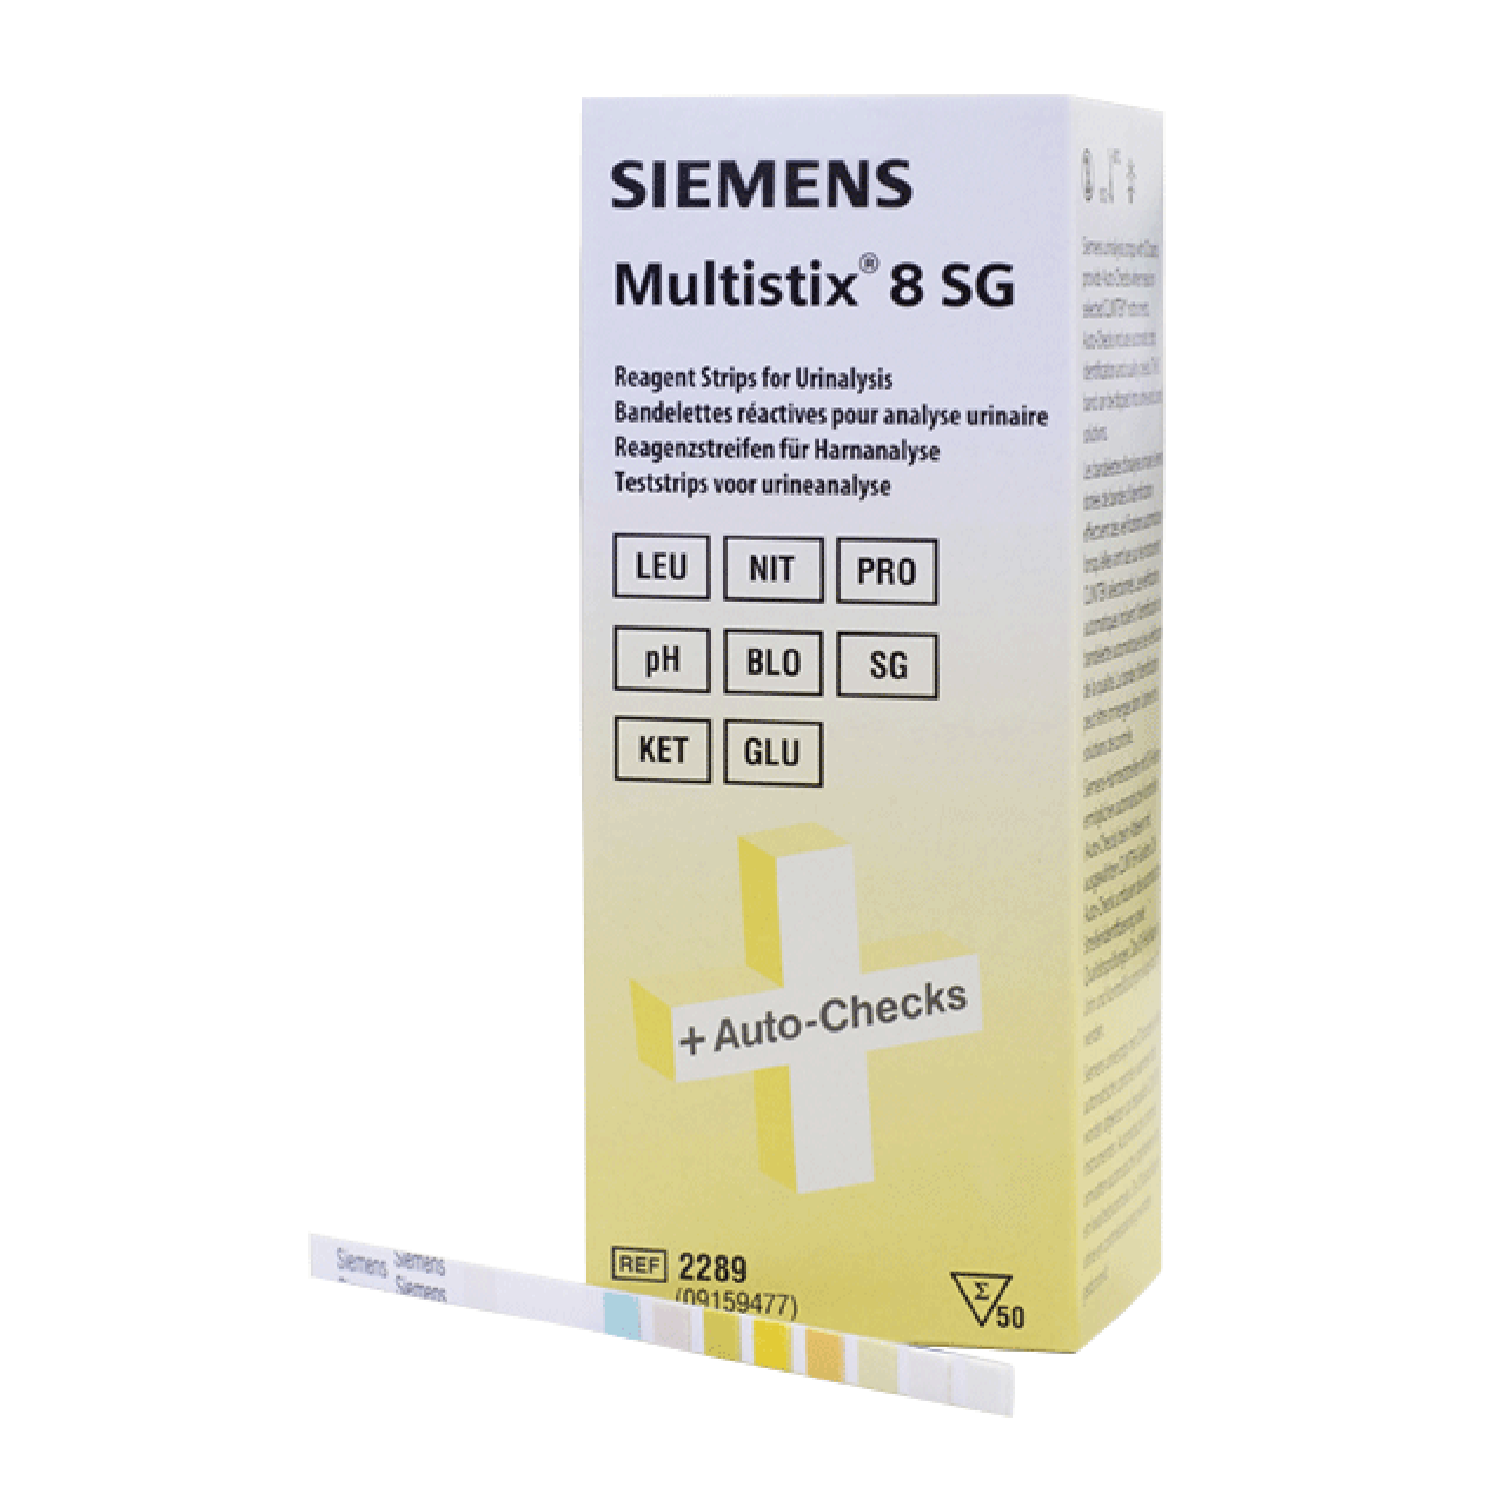 Siemens Multistix 8 SG Reagent Strips for Urinalysis x100